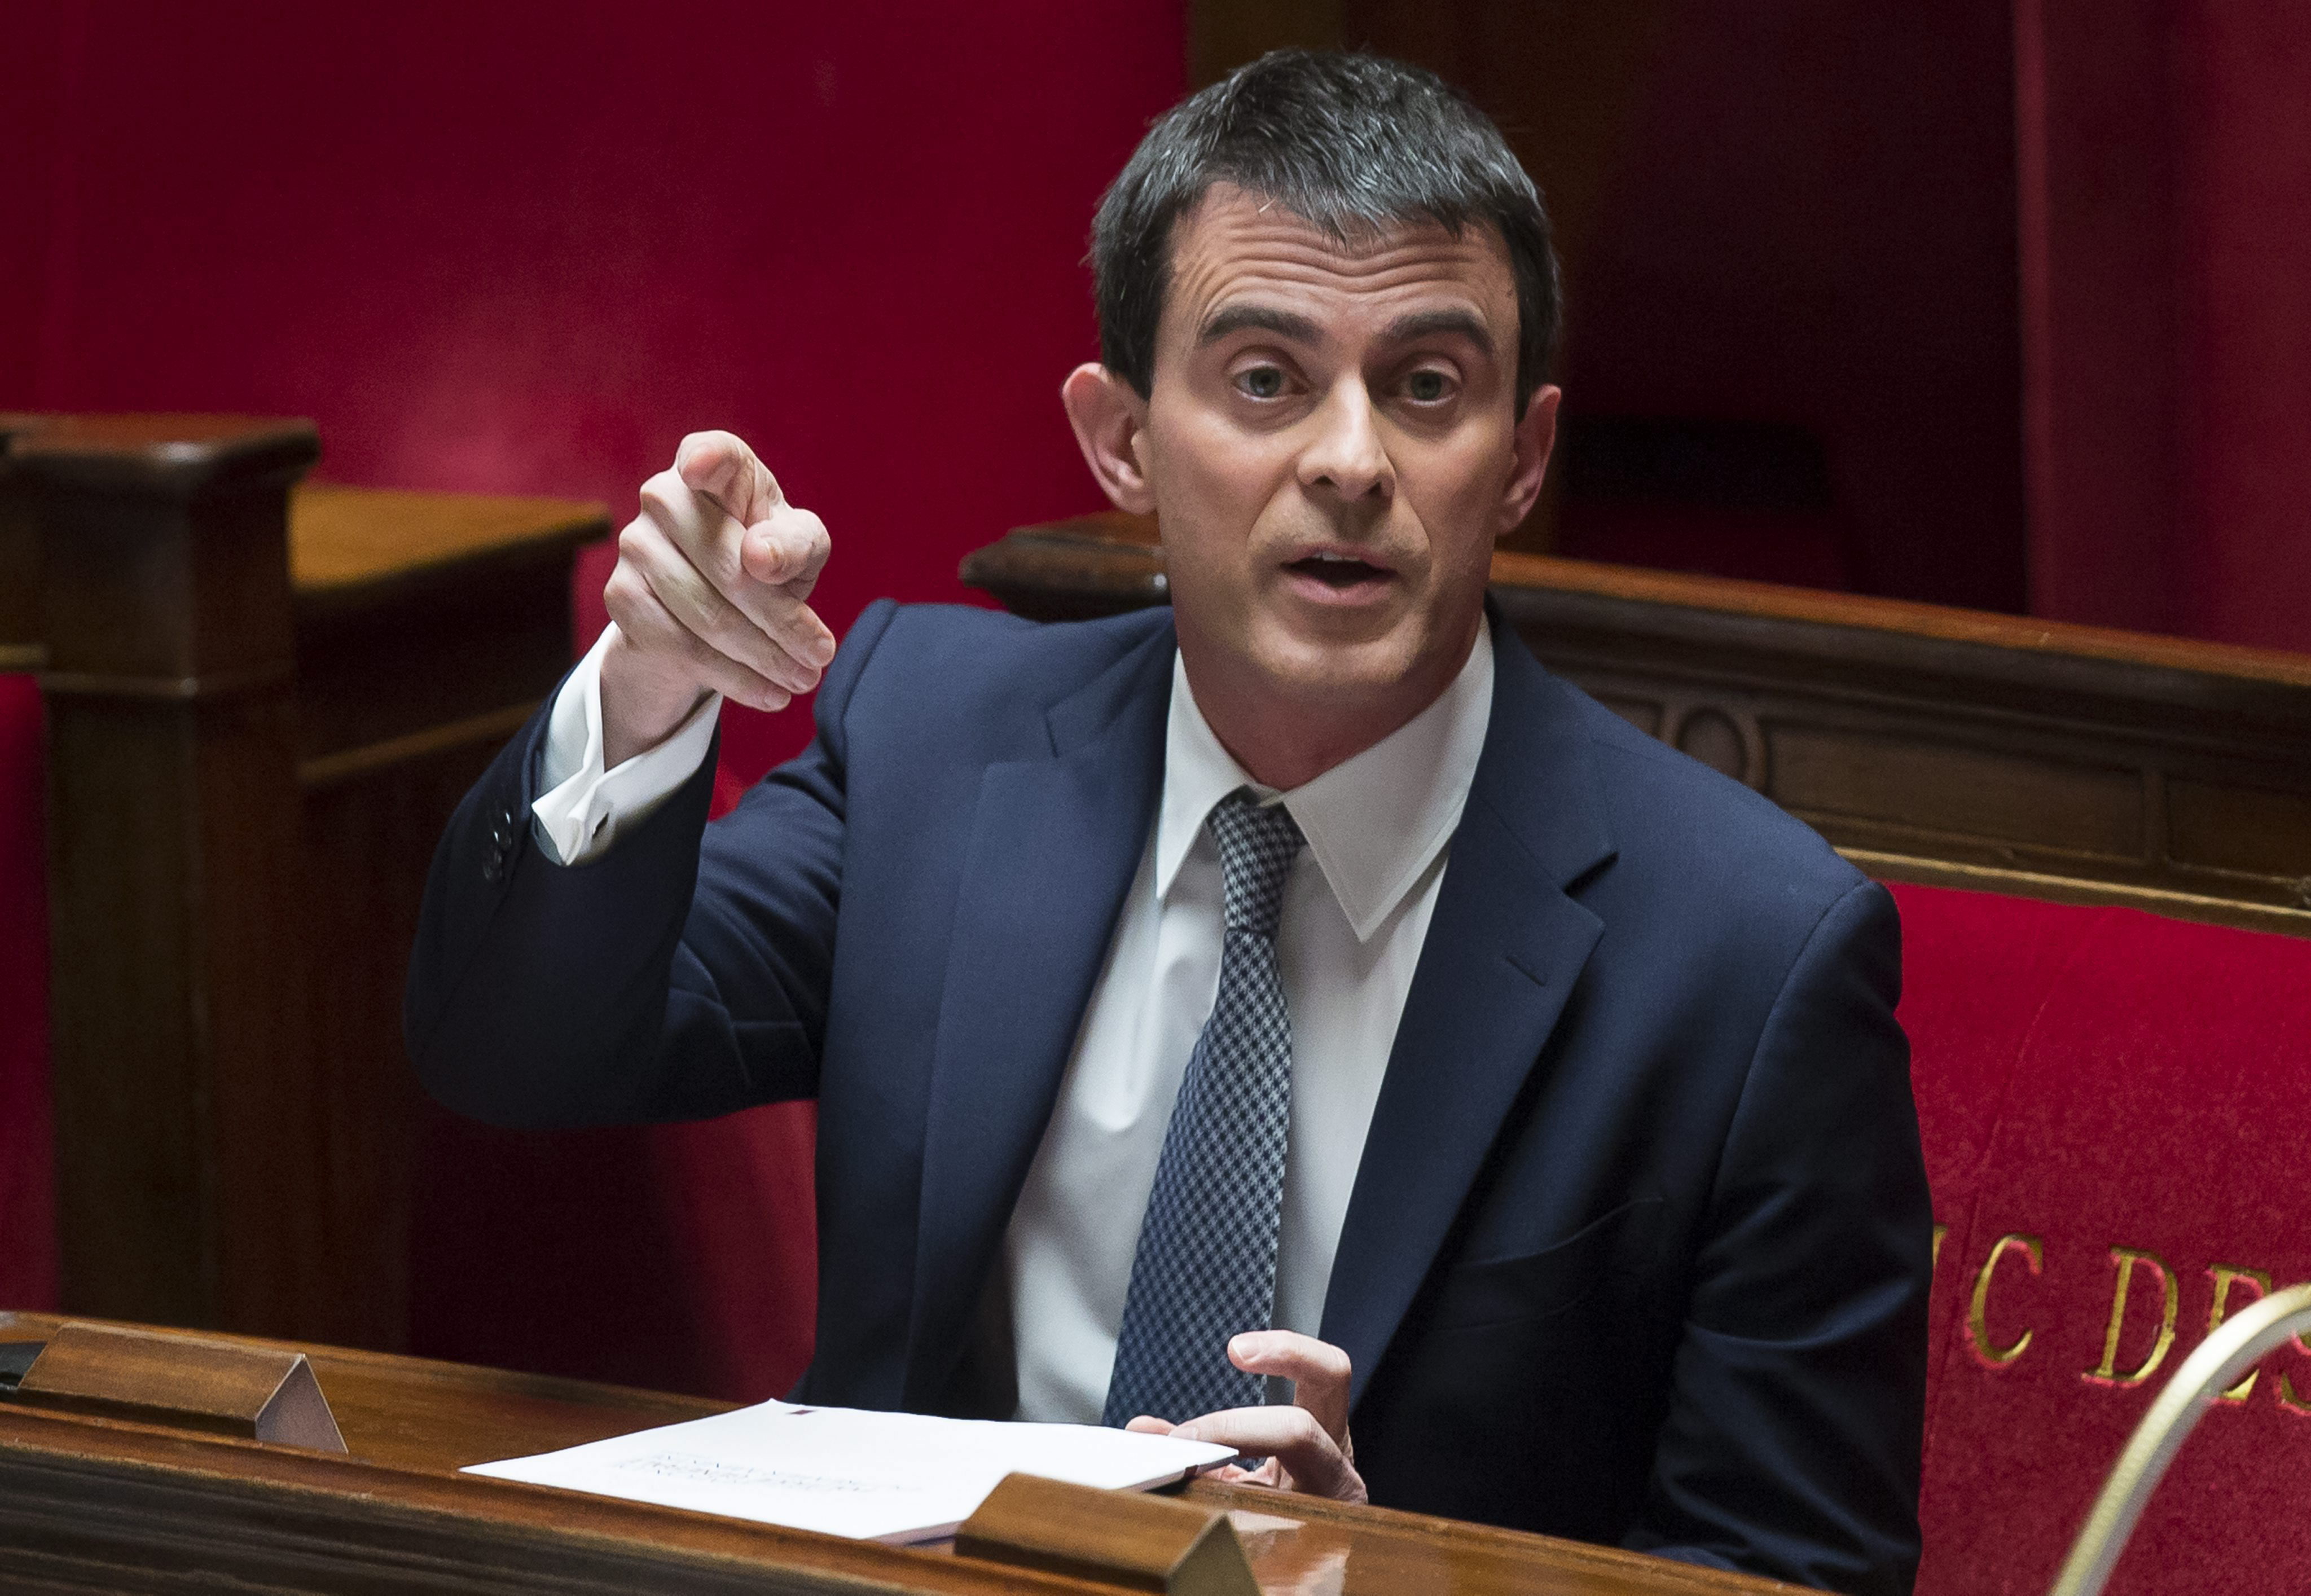 Manuel Valls sigue la estela de las reformas de Mariano Rajoy